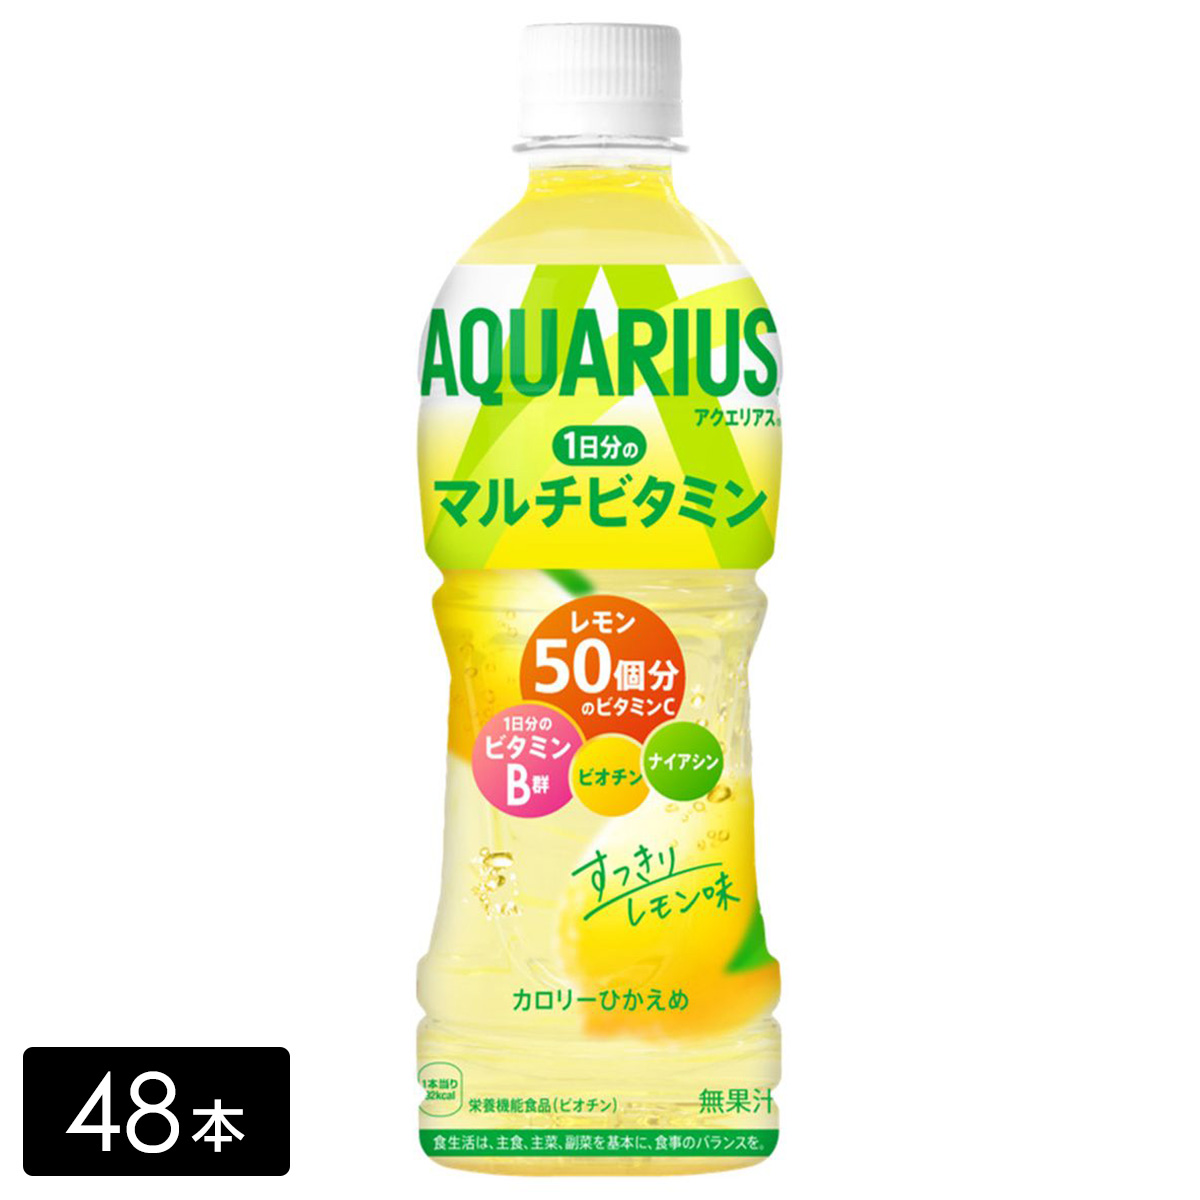 [送料無料]アクエリアス 1日分のマルチビタミン 500mL×48本(24本×2箱) 熱中症対策 水分補給 AQUARIUS ペットボトル ケース売り まとめ買い